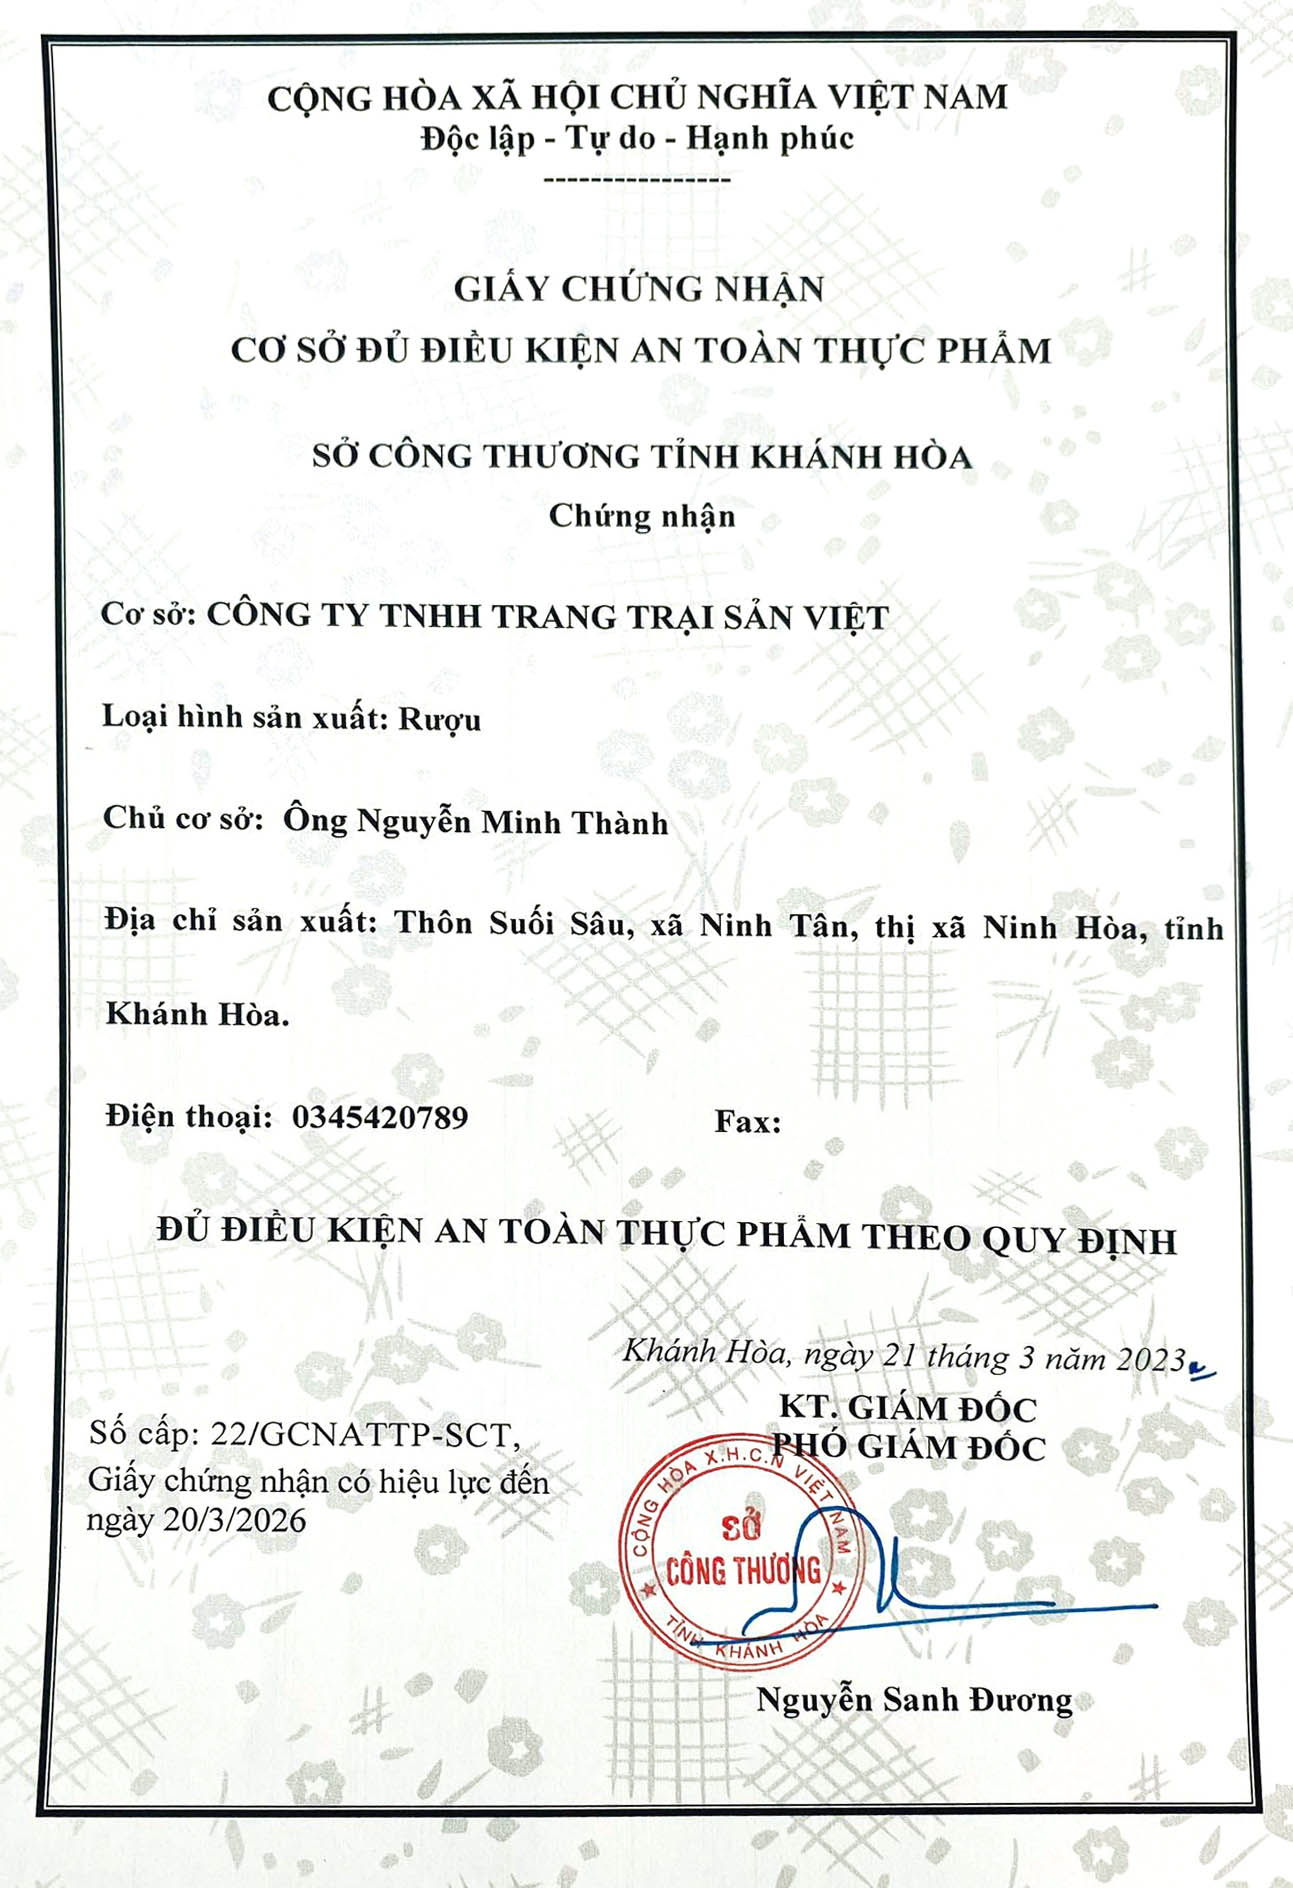 Giấy chứng nhận ATTP Trang trại Sản Việt